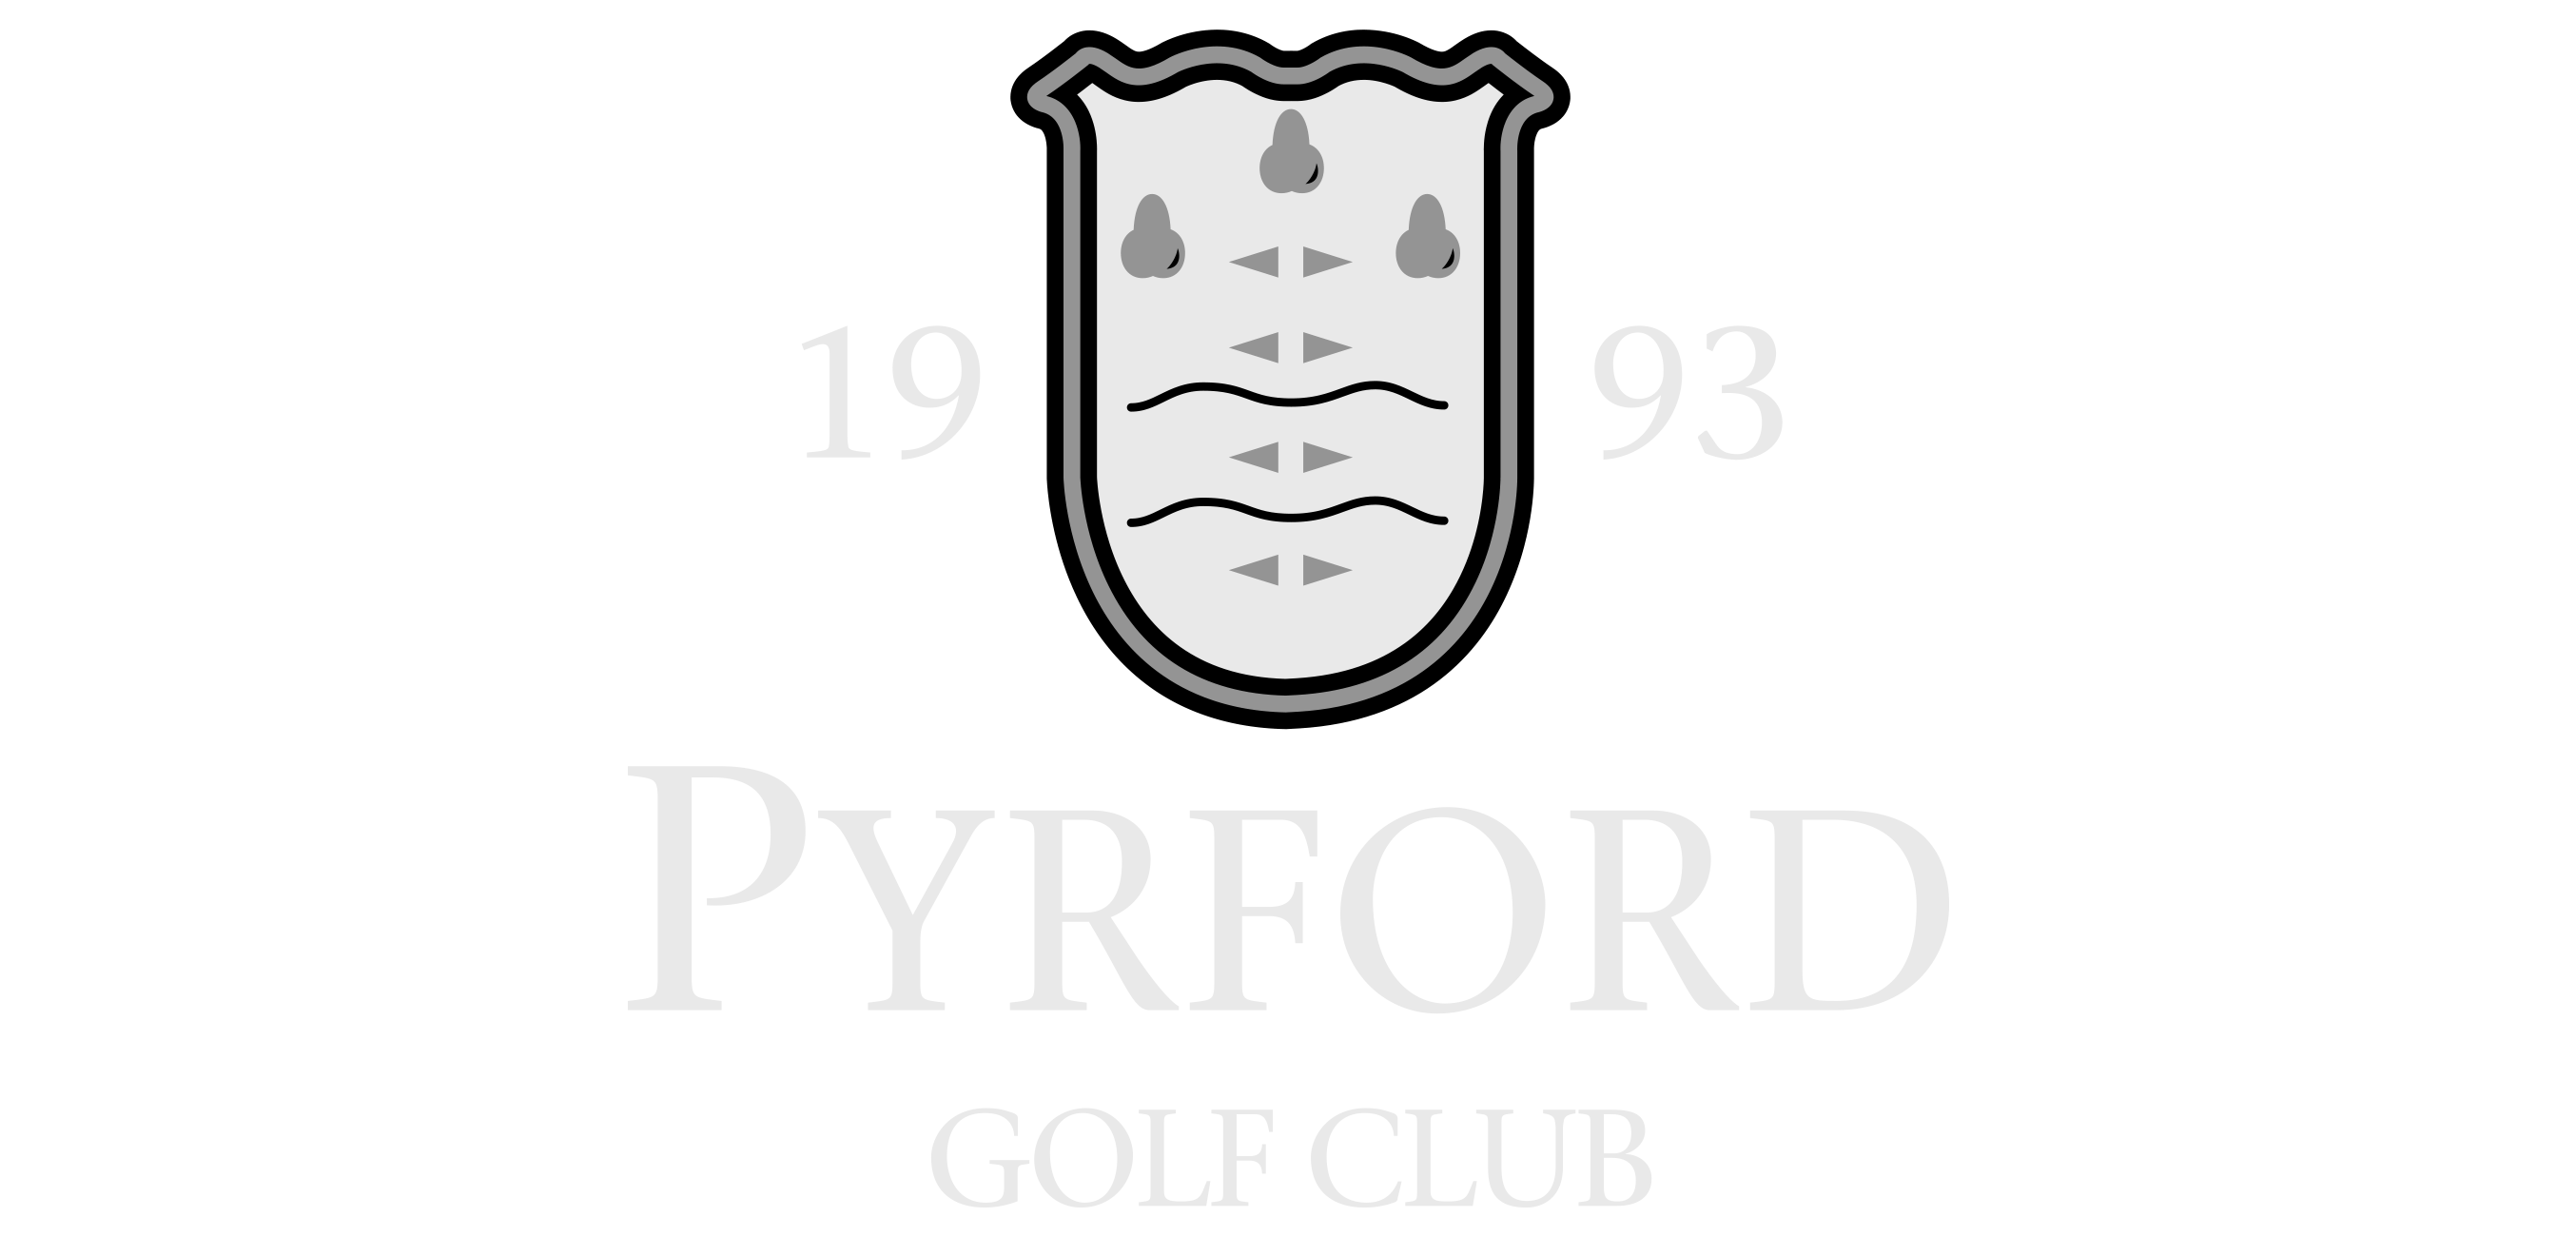 Golf Club Logo - Pyrford Golf Club. Golf Membership. Venue Hire Woking, Surrey